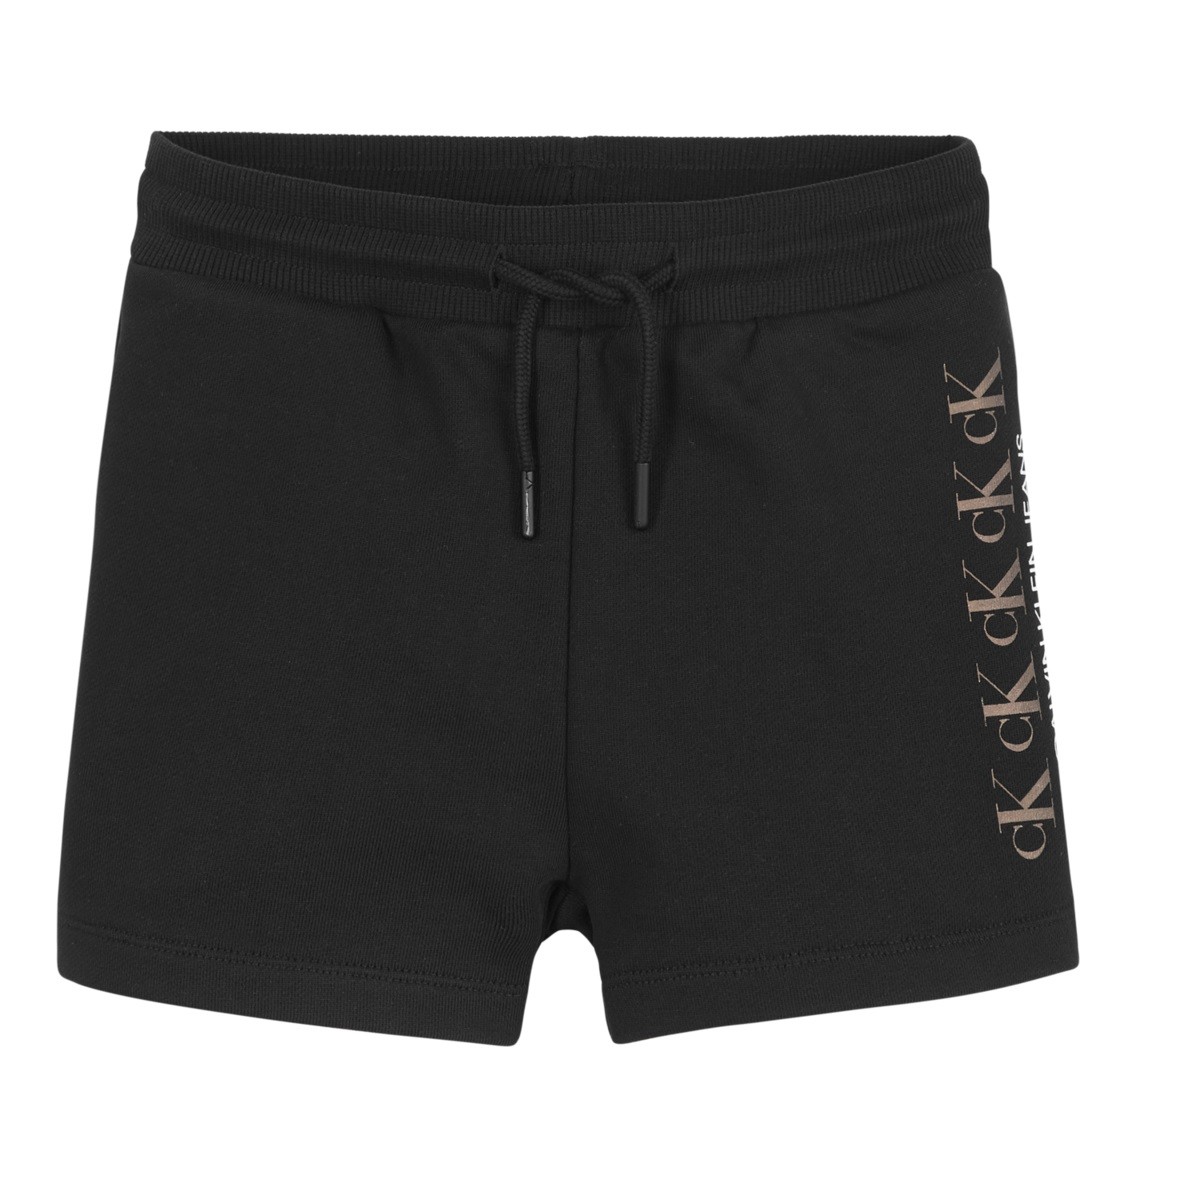 Vêtements Fille Shorts / Bermudas Купальник чорний calvin klein CK REPEAT FOIL KNIT SHORTS Noir